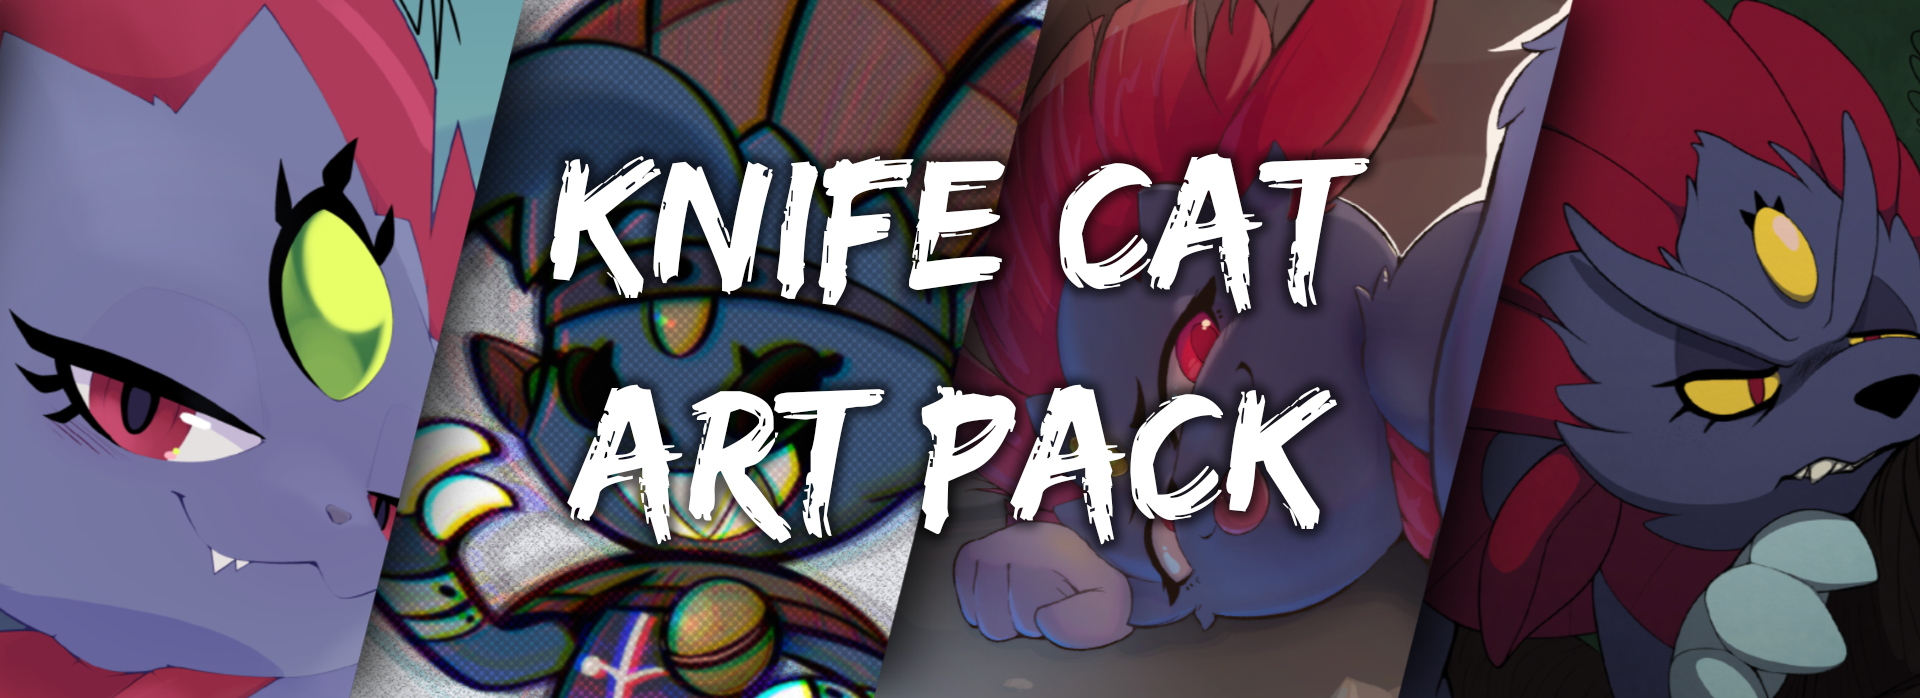 Knife Cat Art Pack